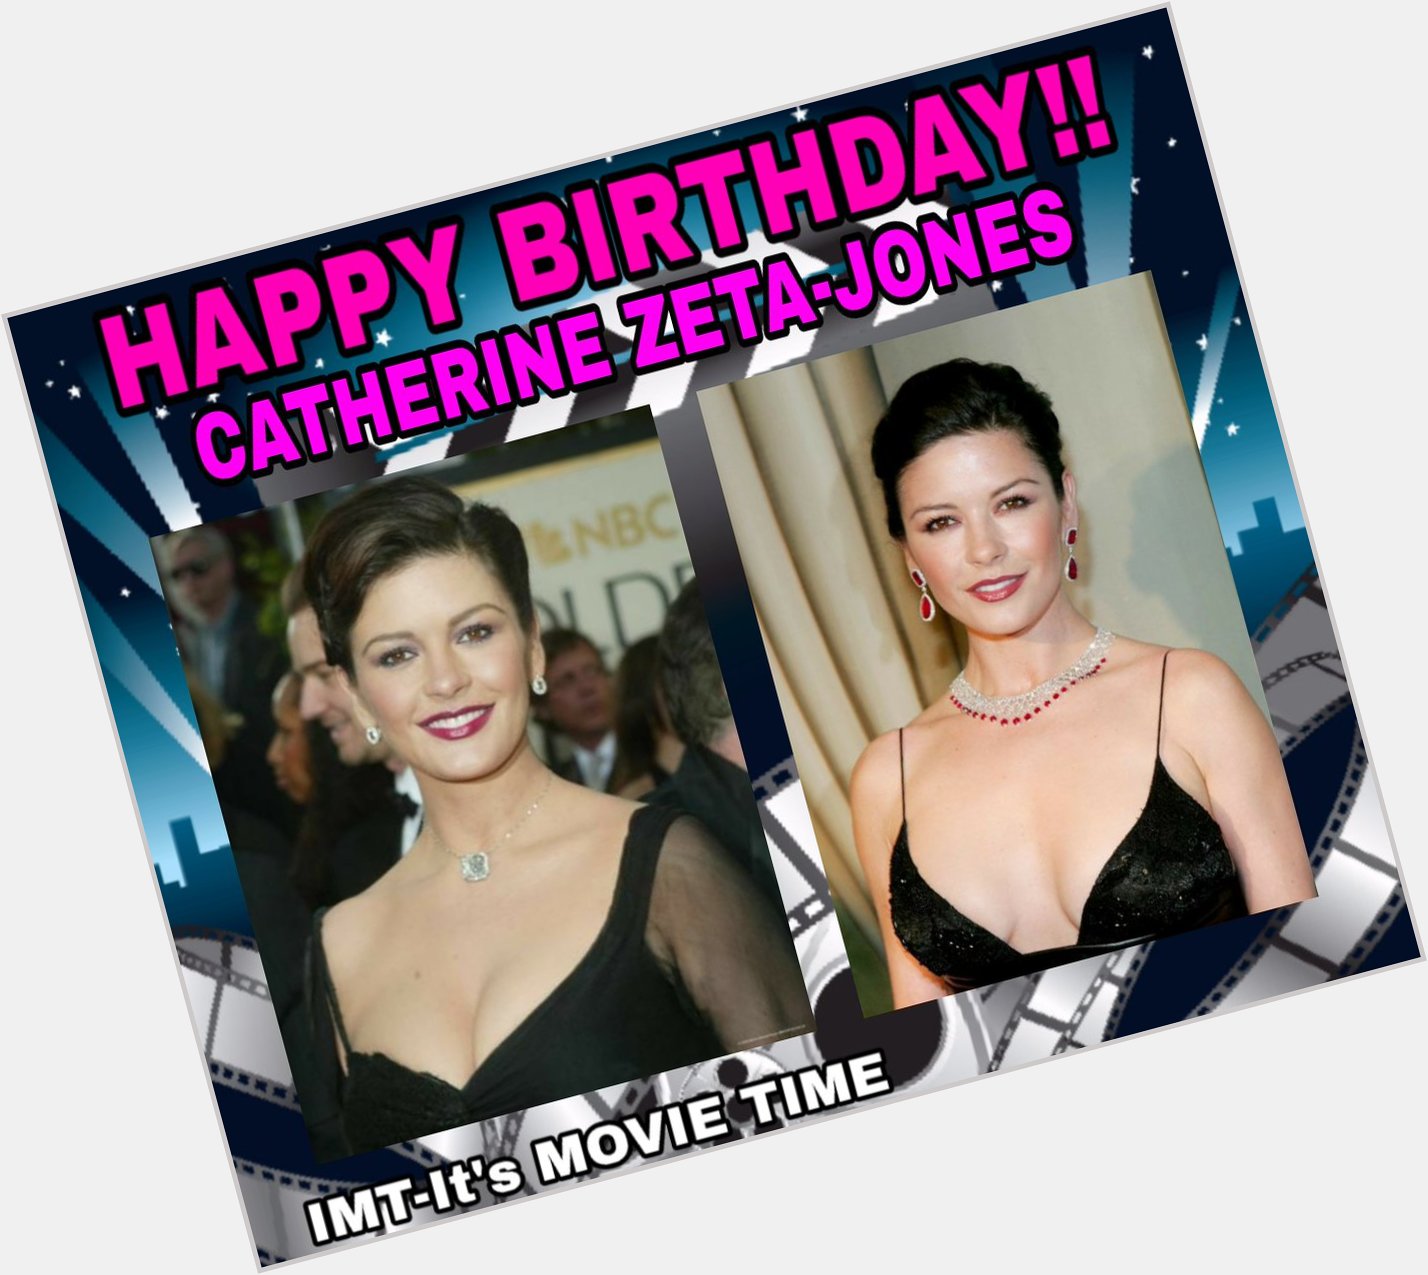 Happy Birthday to Catherine Zeta-Jones! The actress is celebrating 51 years. 